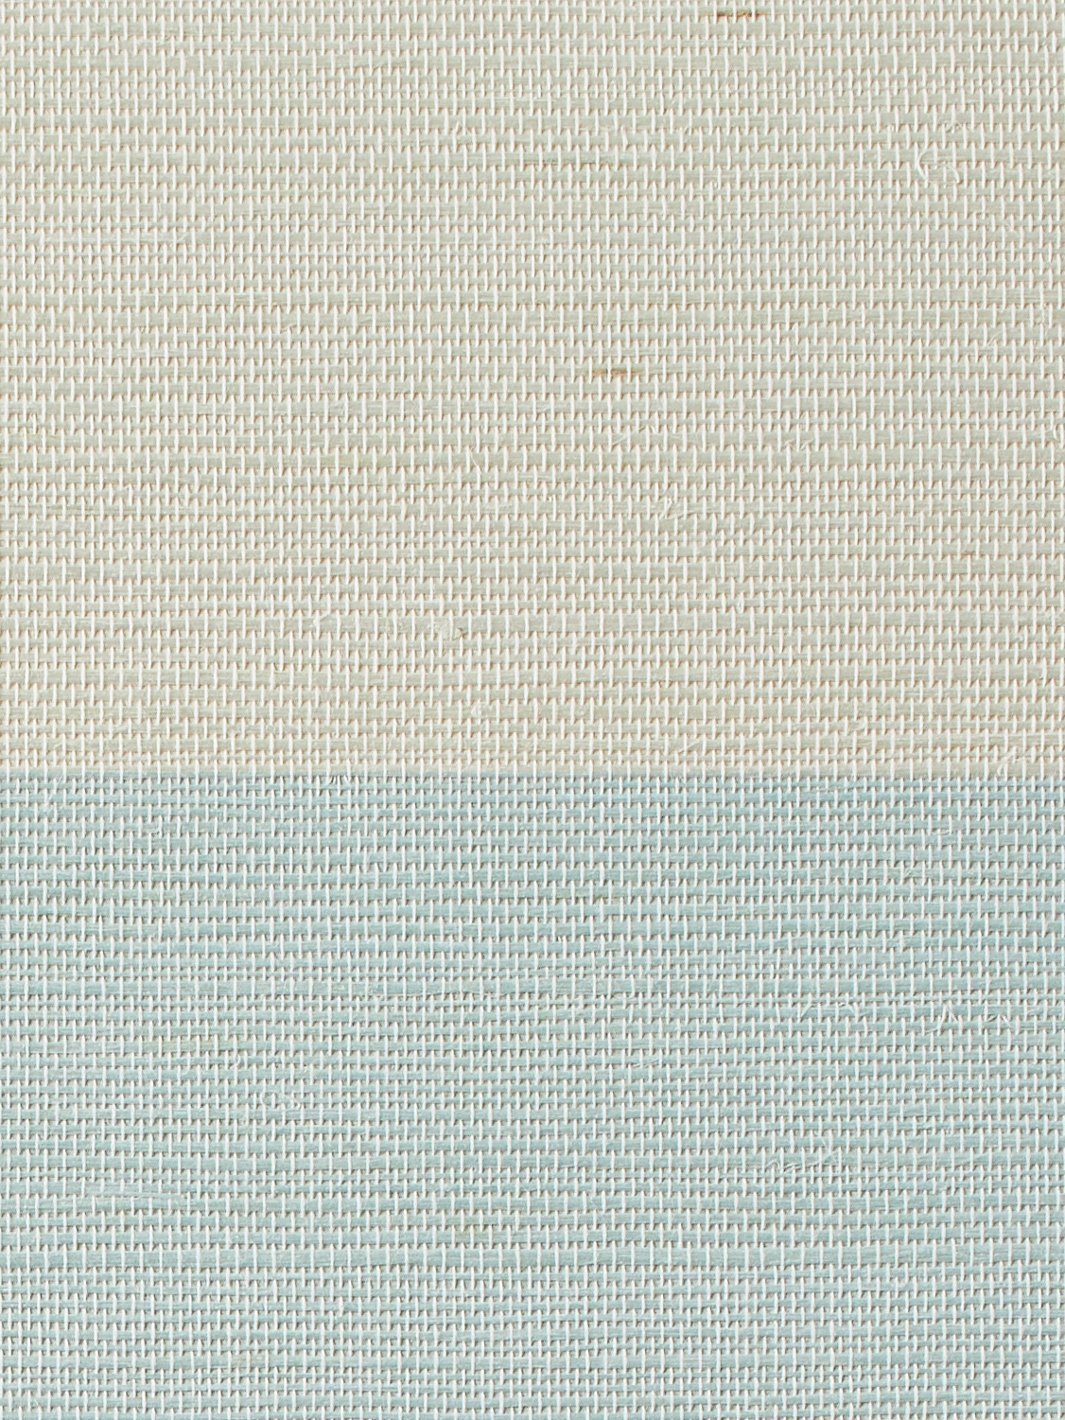 'Wide Stripe' Grasscloth' Wallpaper by Wallshoppe - Sky